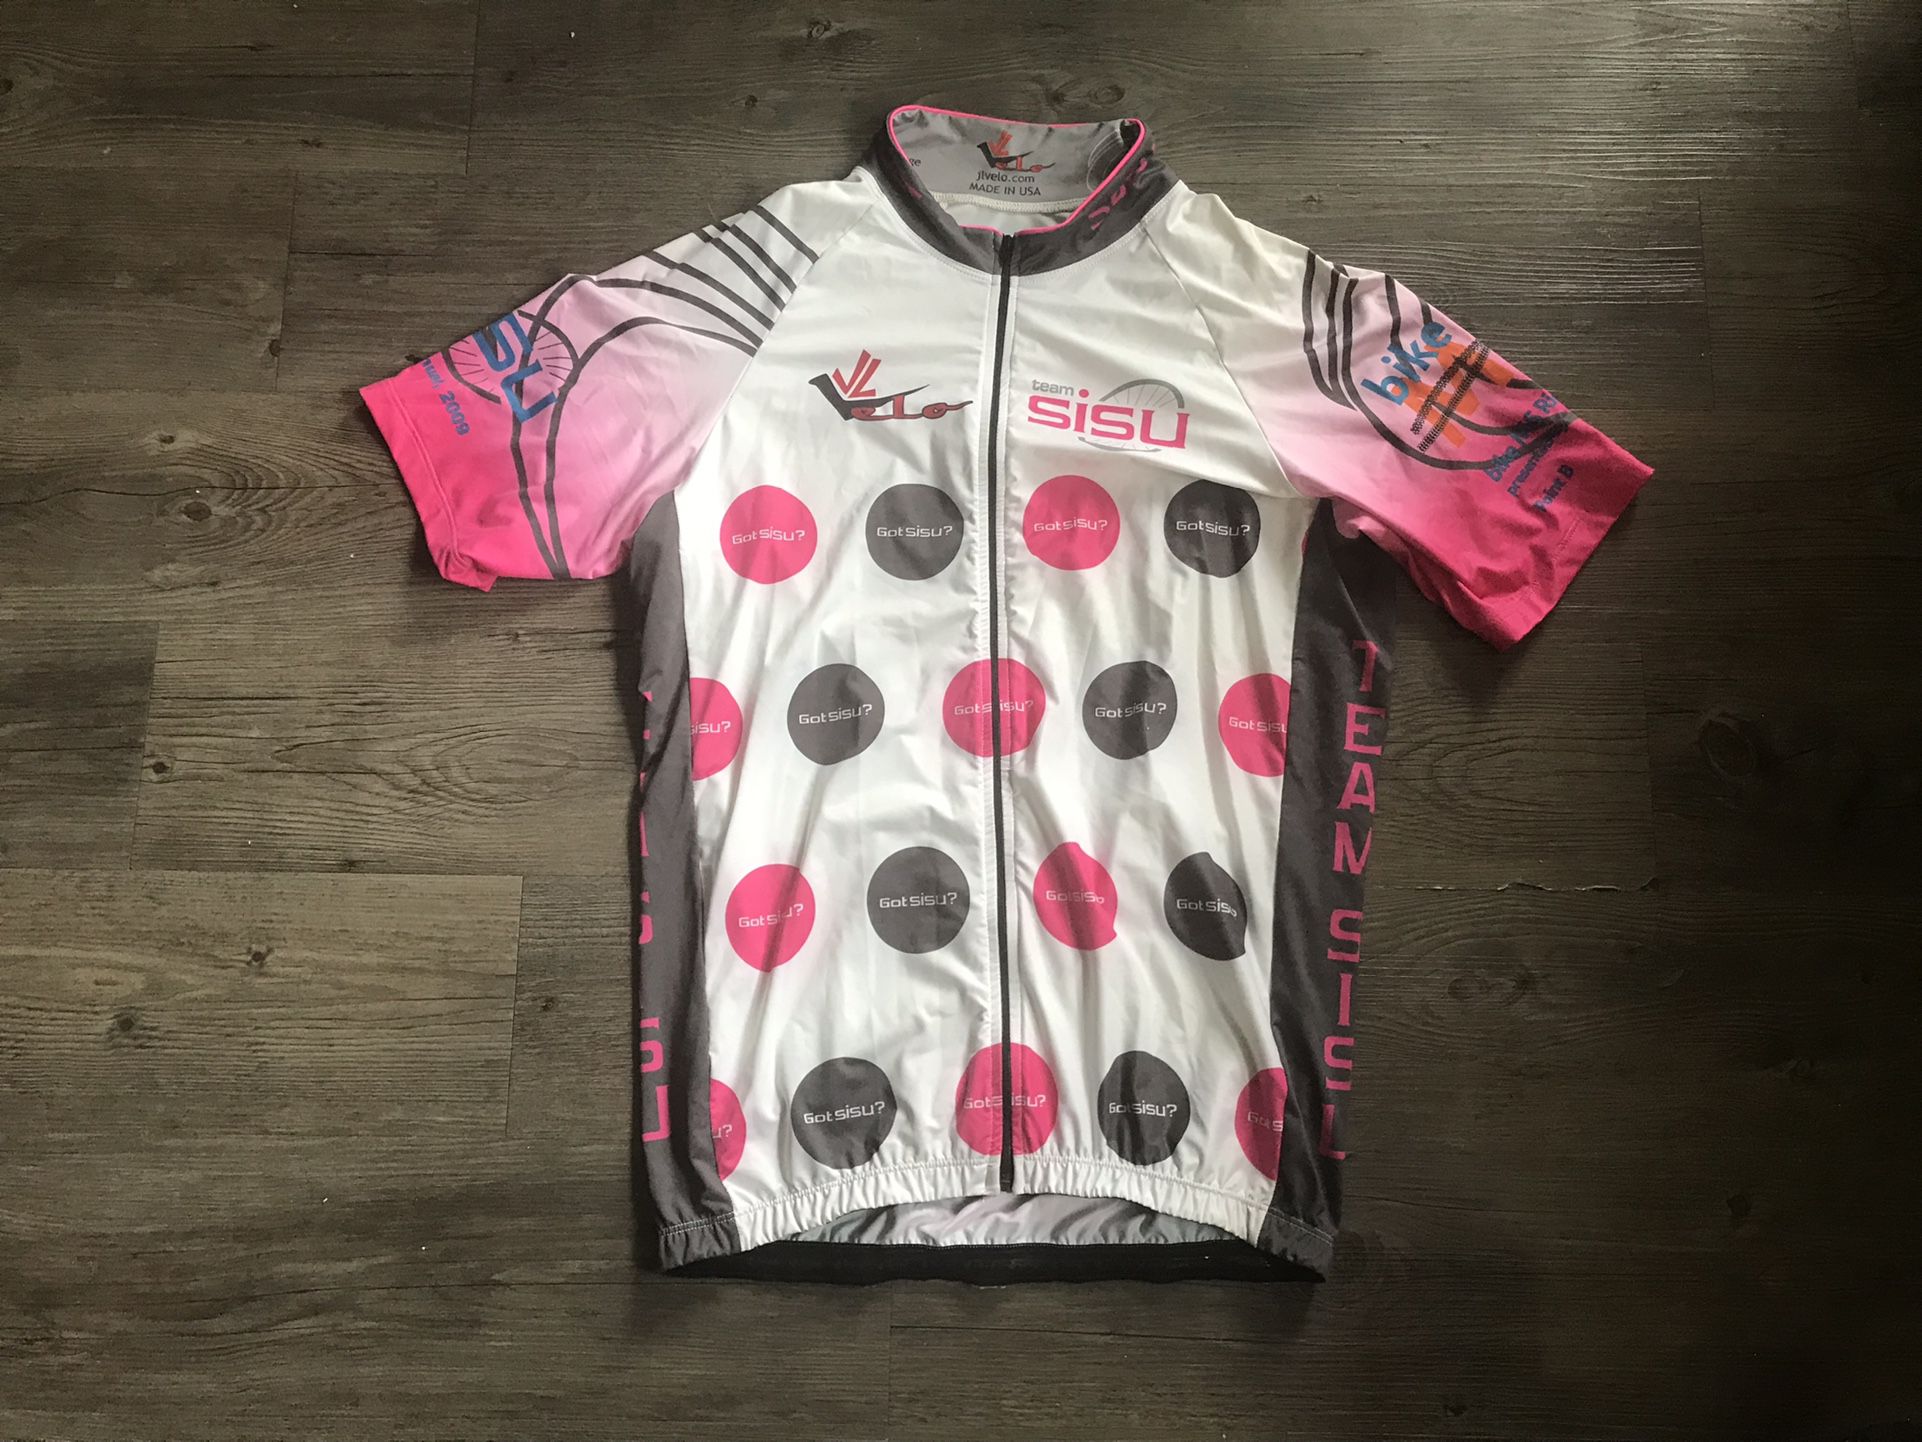 Cycling Jersey - XL